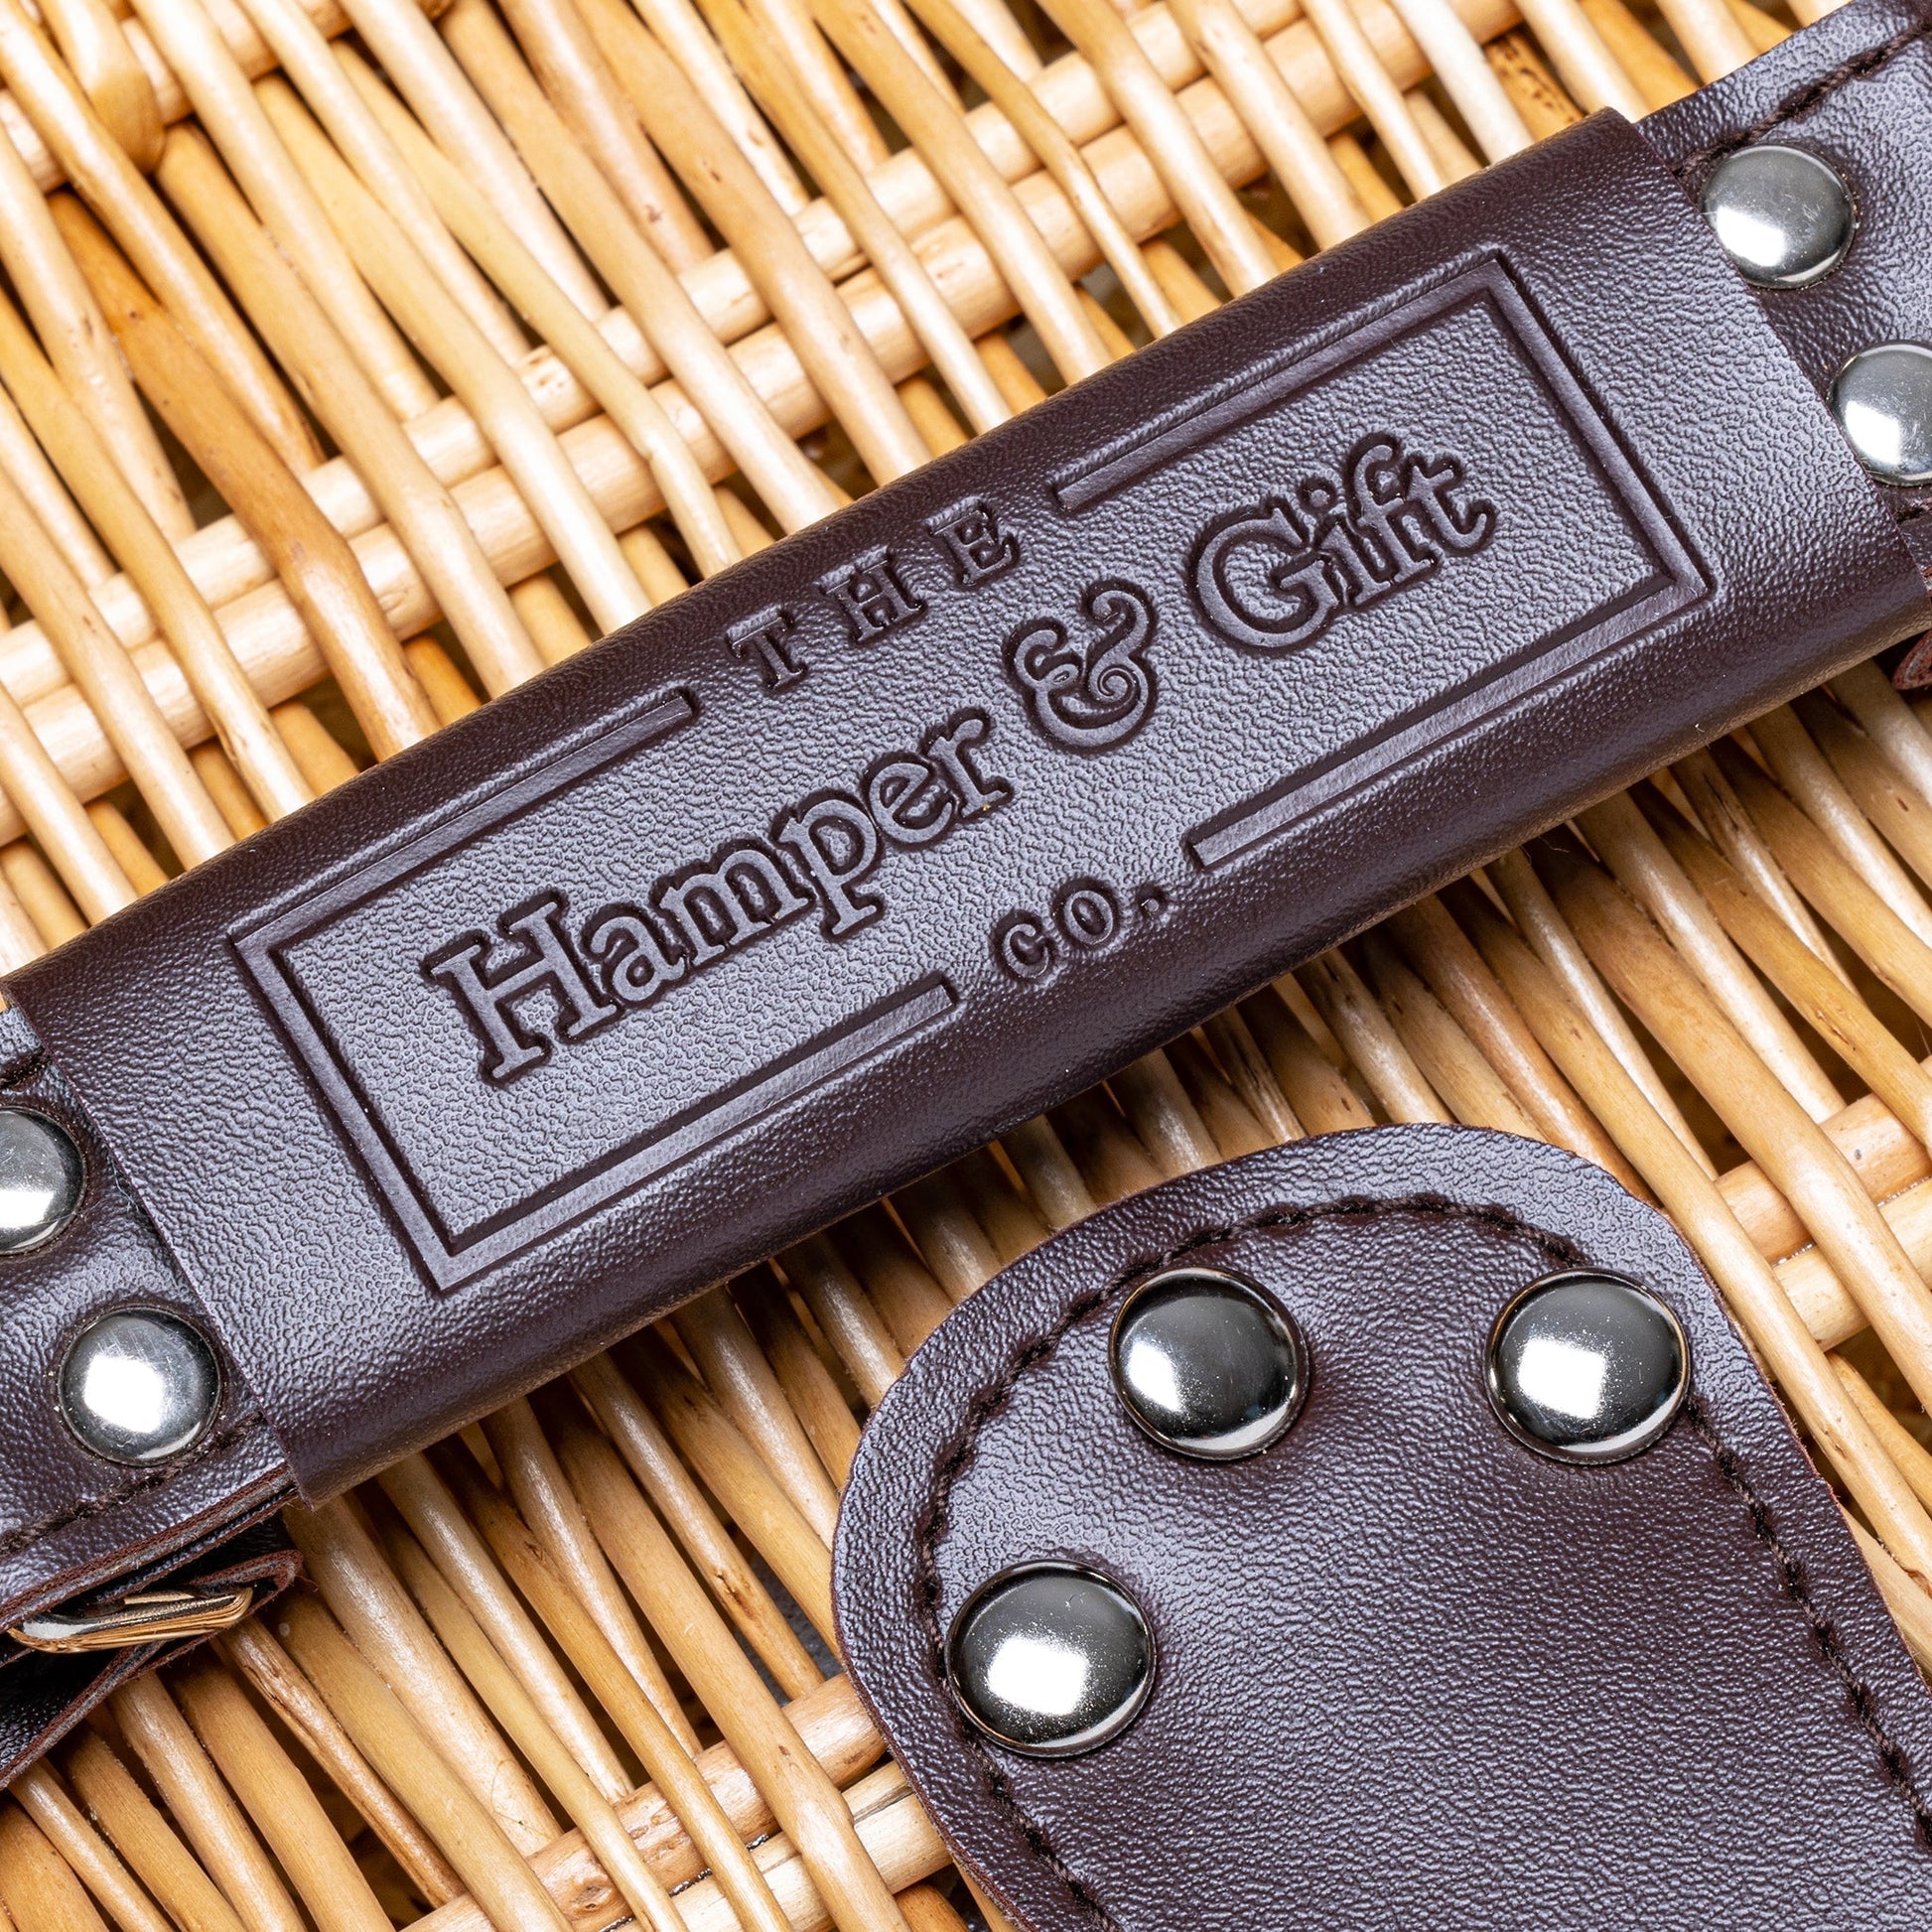 Hamper & Gift Logo on hamper handle